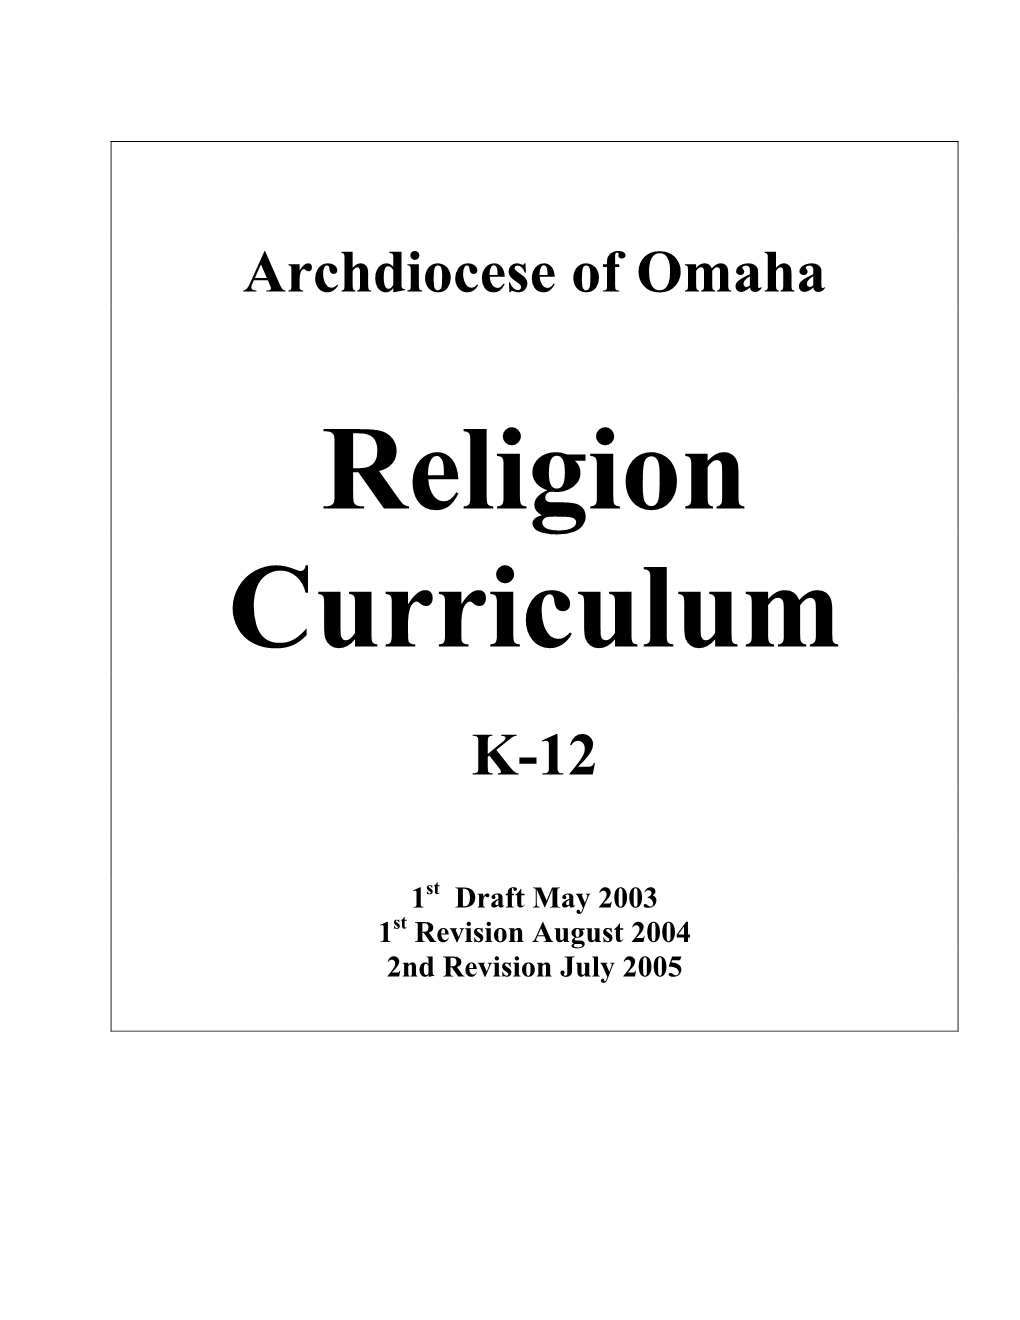 Religion Curriculum